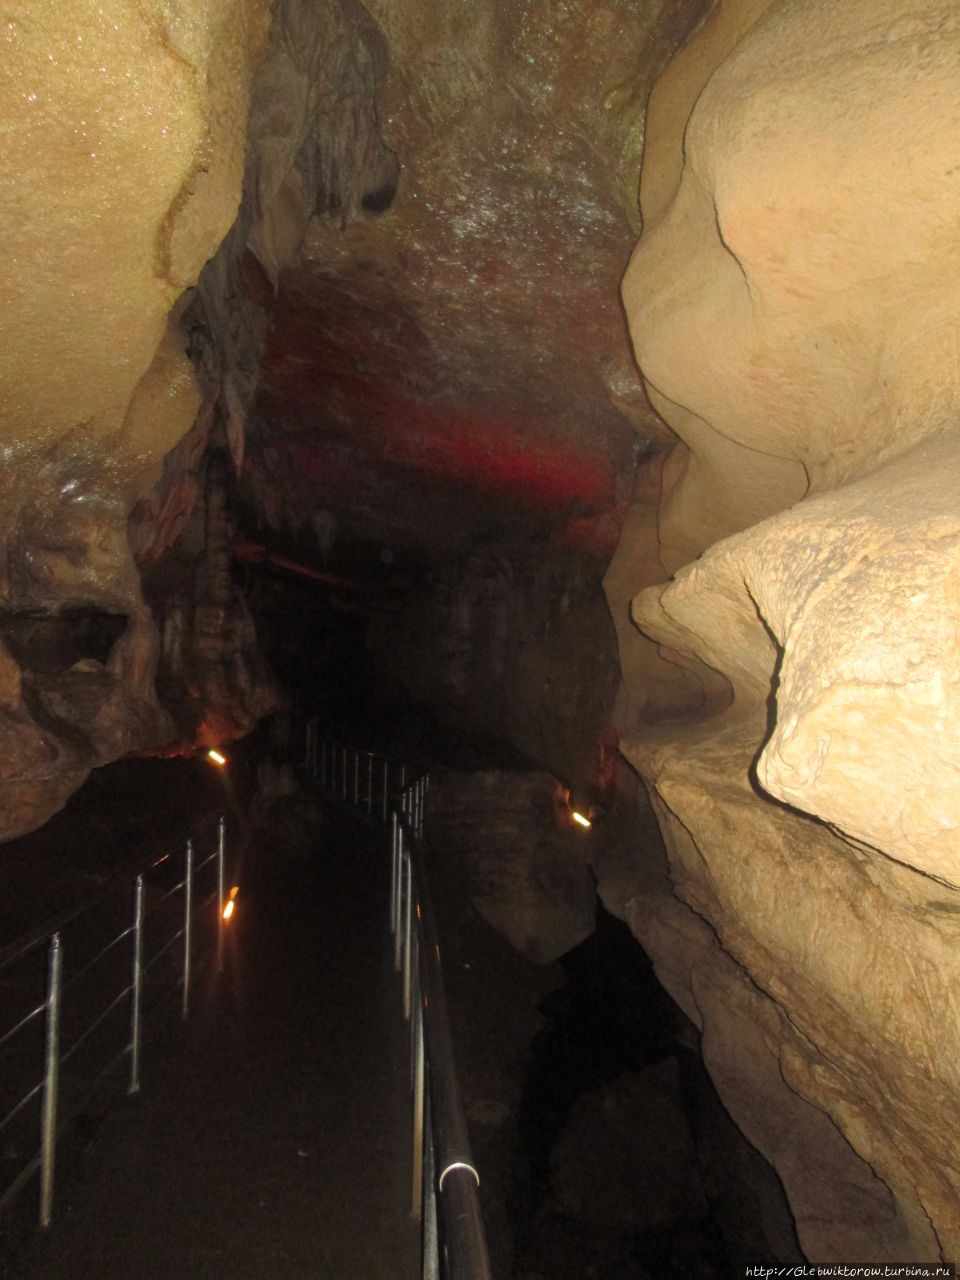 Прогулка по темной и мрачной пещере Сатаплия Природный Парк, Грузия